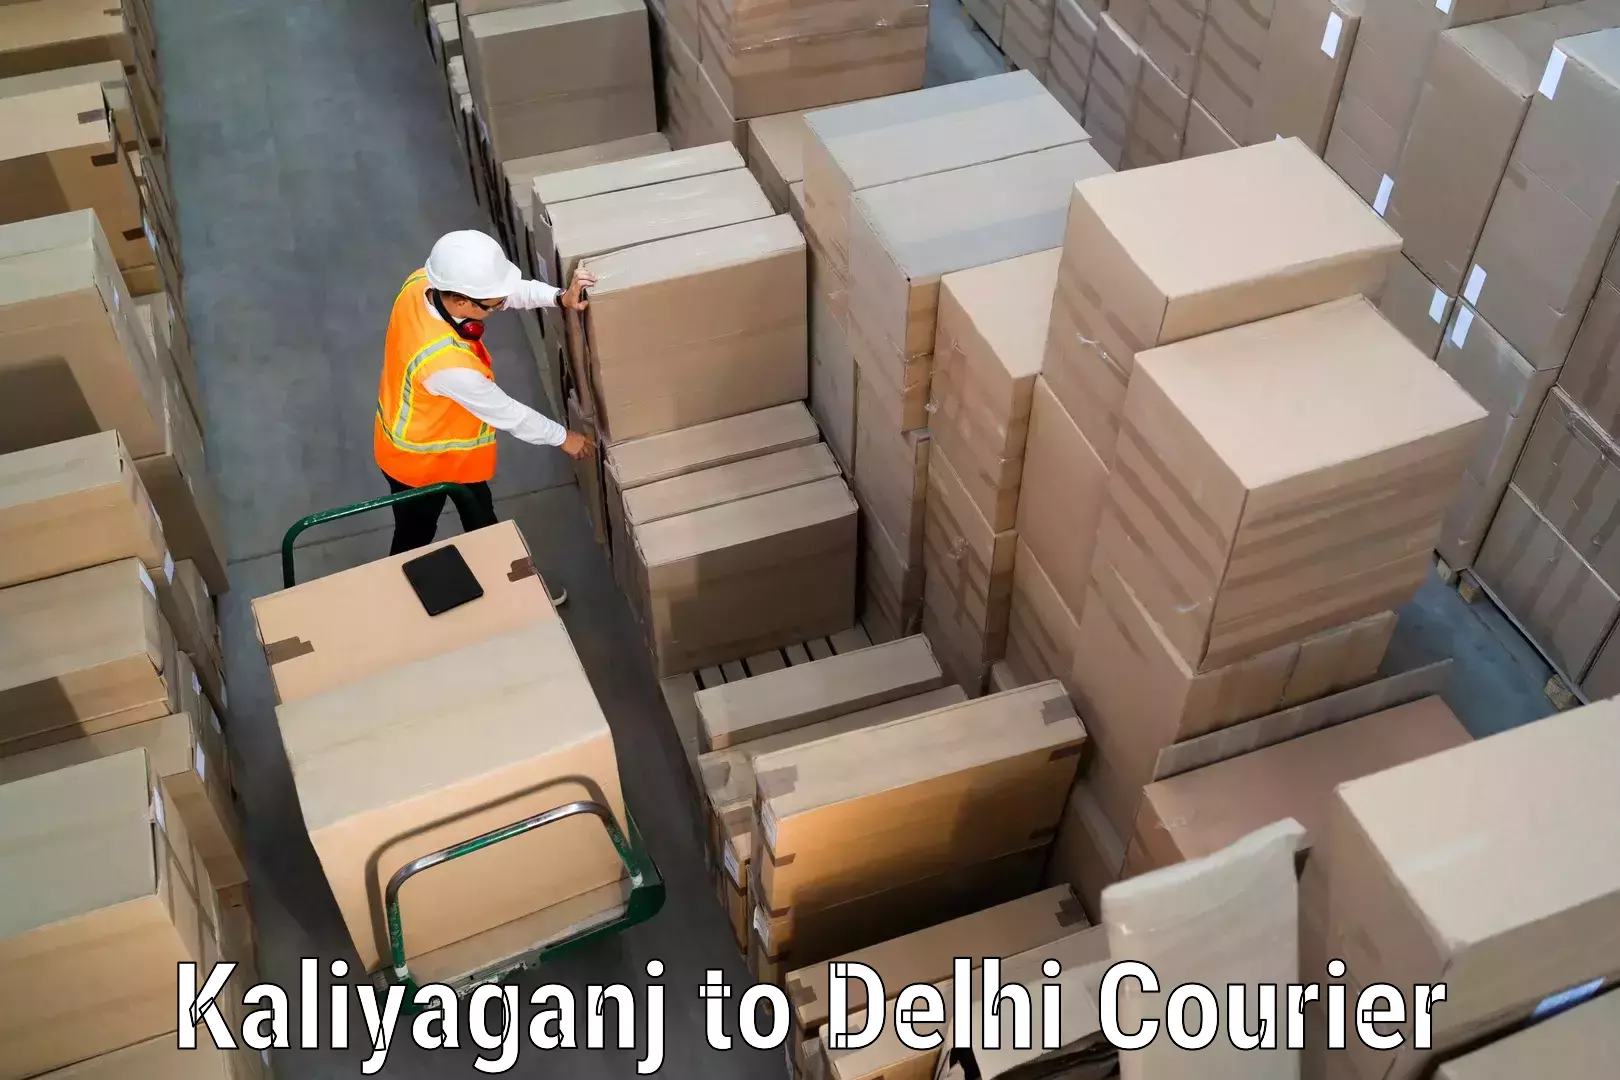 High-speed parcel service Kaliyaganj to East Delhi